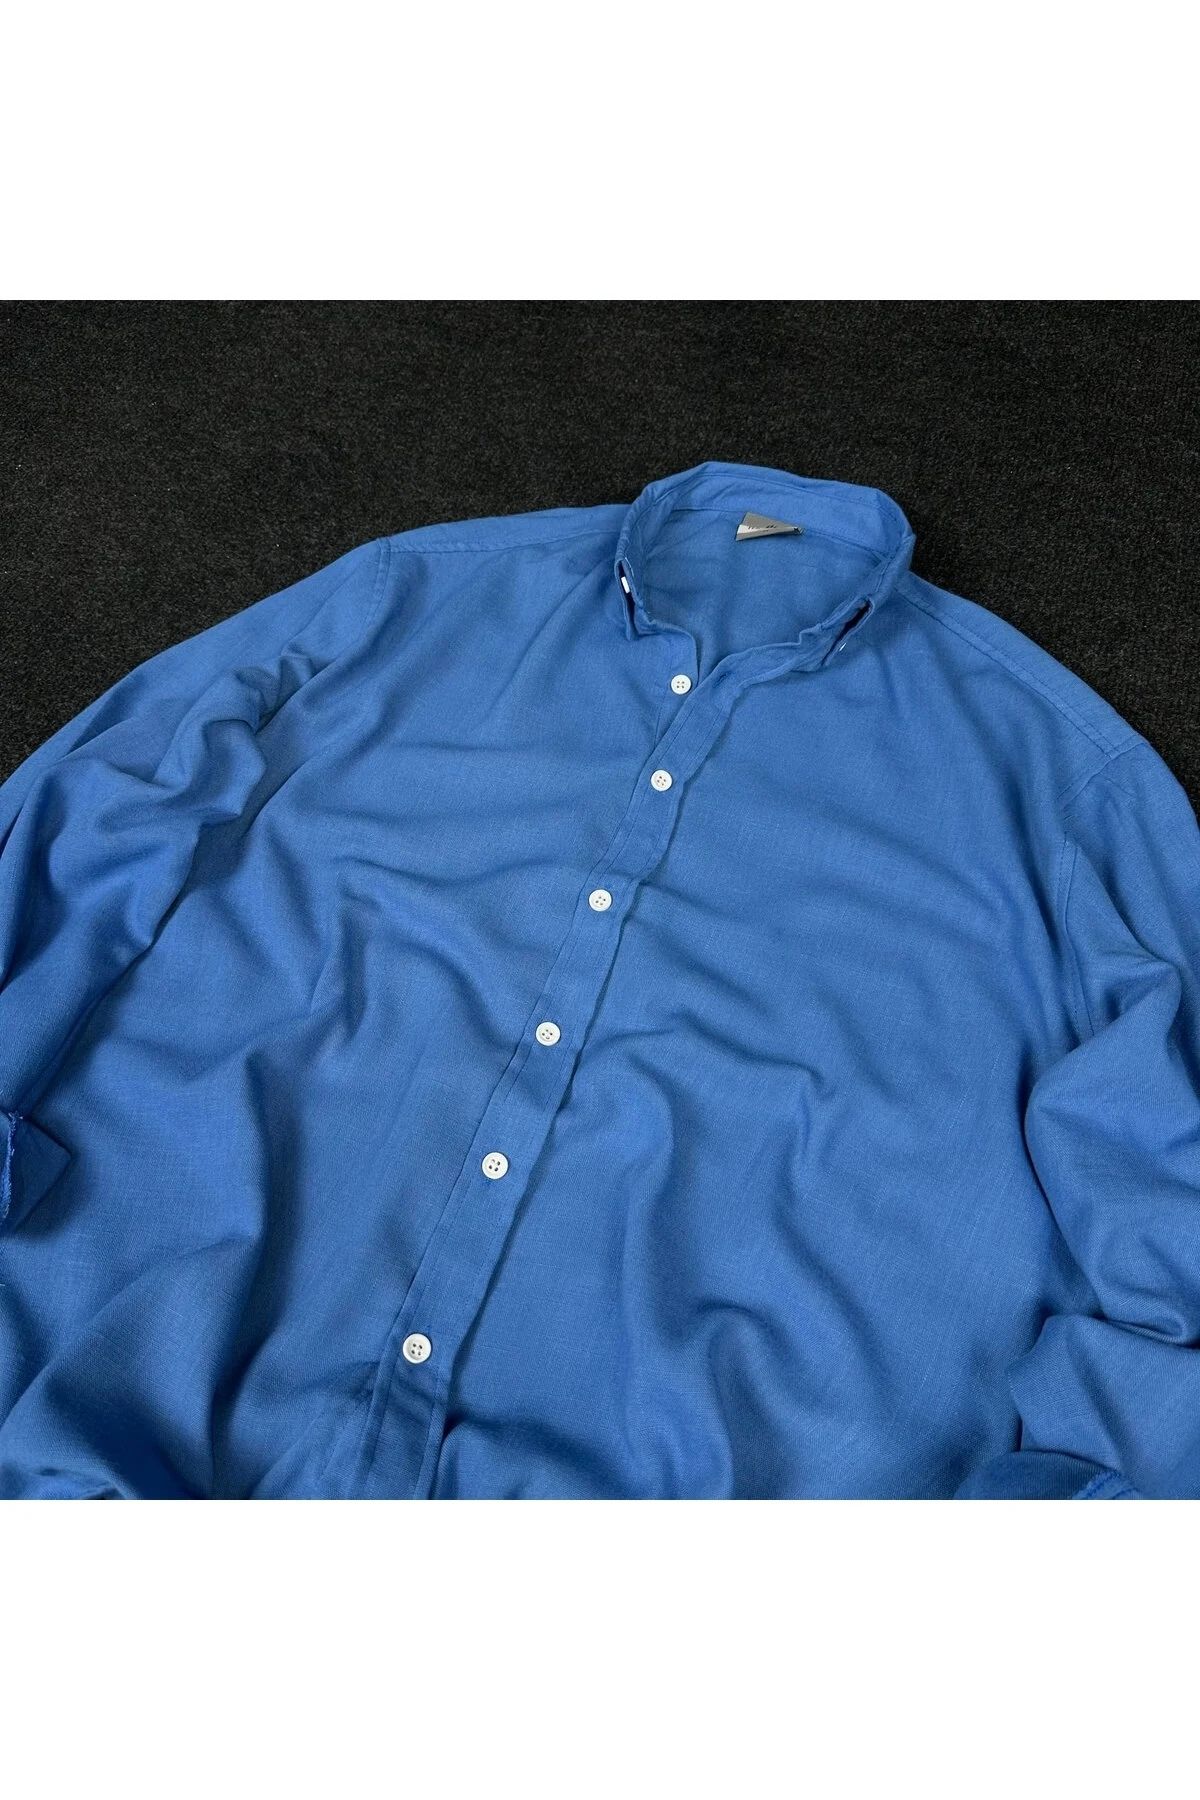 çerme Mavi Erkek Basic Oversize Gömlek Yaka Uzun Kollu Yazlık Gömlek